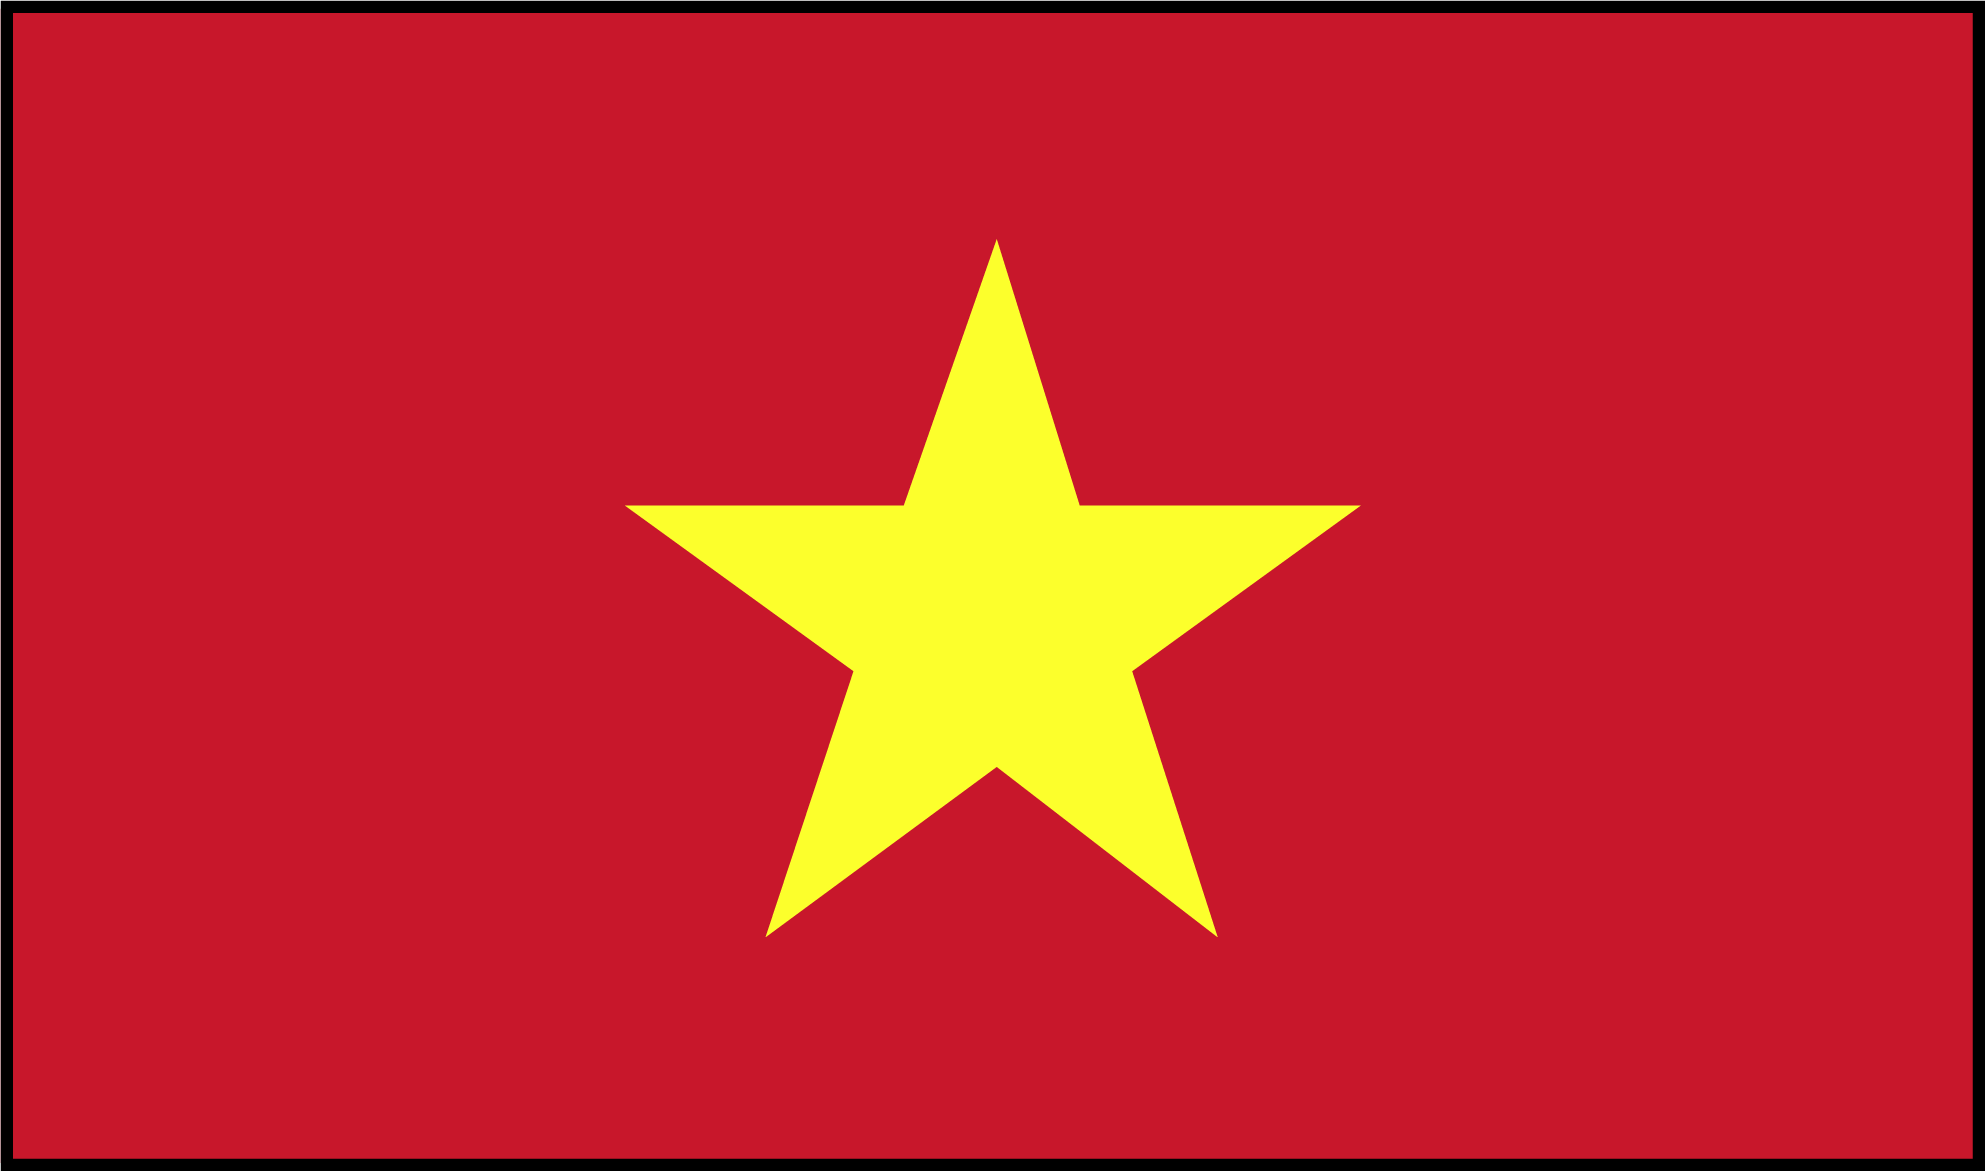 Welcome to Endeavor Vietnam